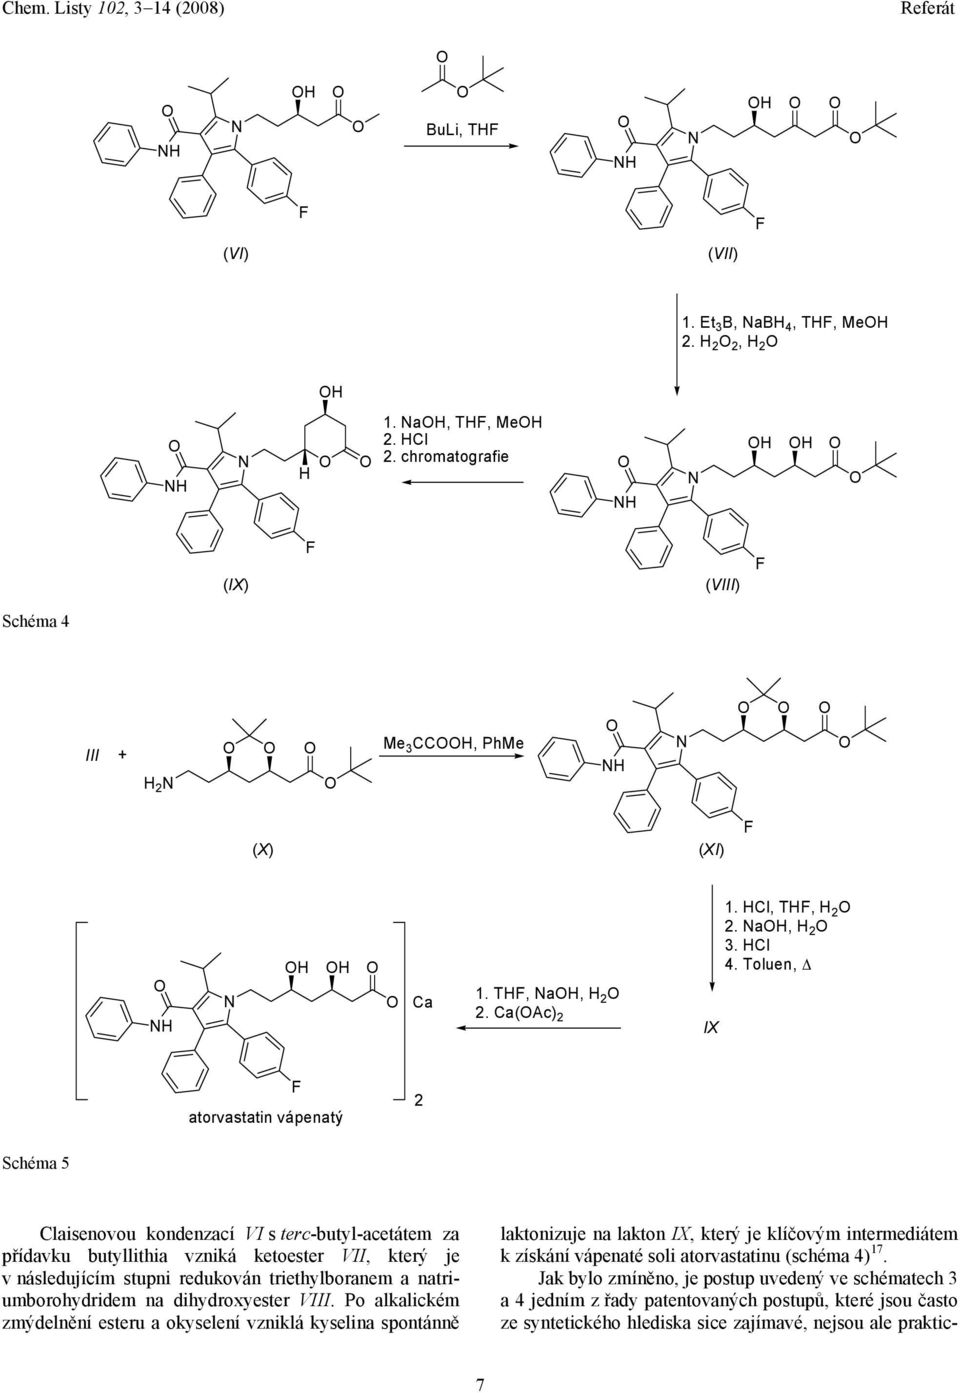 Toluen, atorvastatin vápenatý 2 Schéma 5 aisenovou kondenzací VI s terc-butyl-acetátem za přídavku butyllithia vzniká ketoester VII, který je v následujícím stupni redukován triethylboranem a